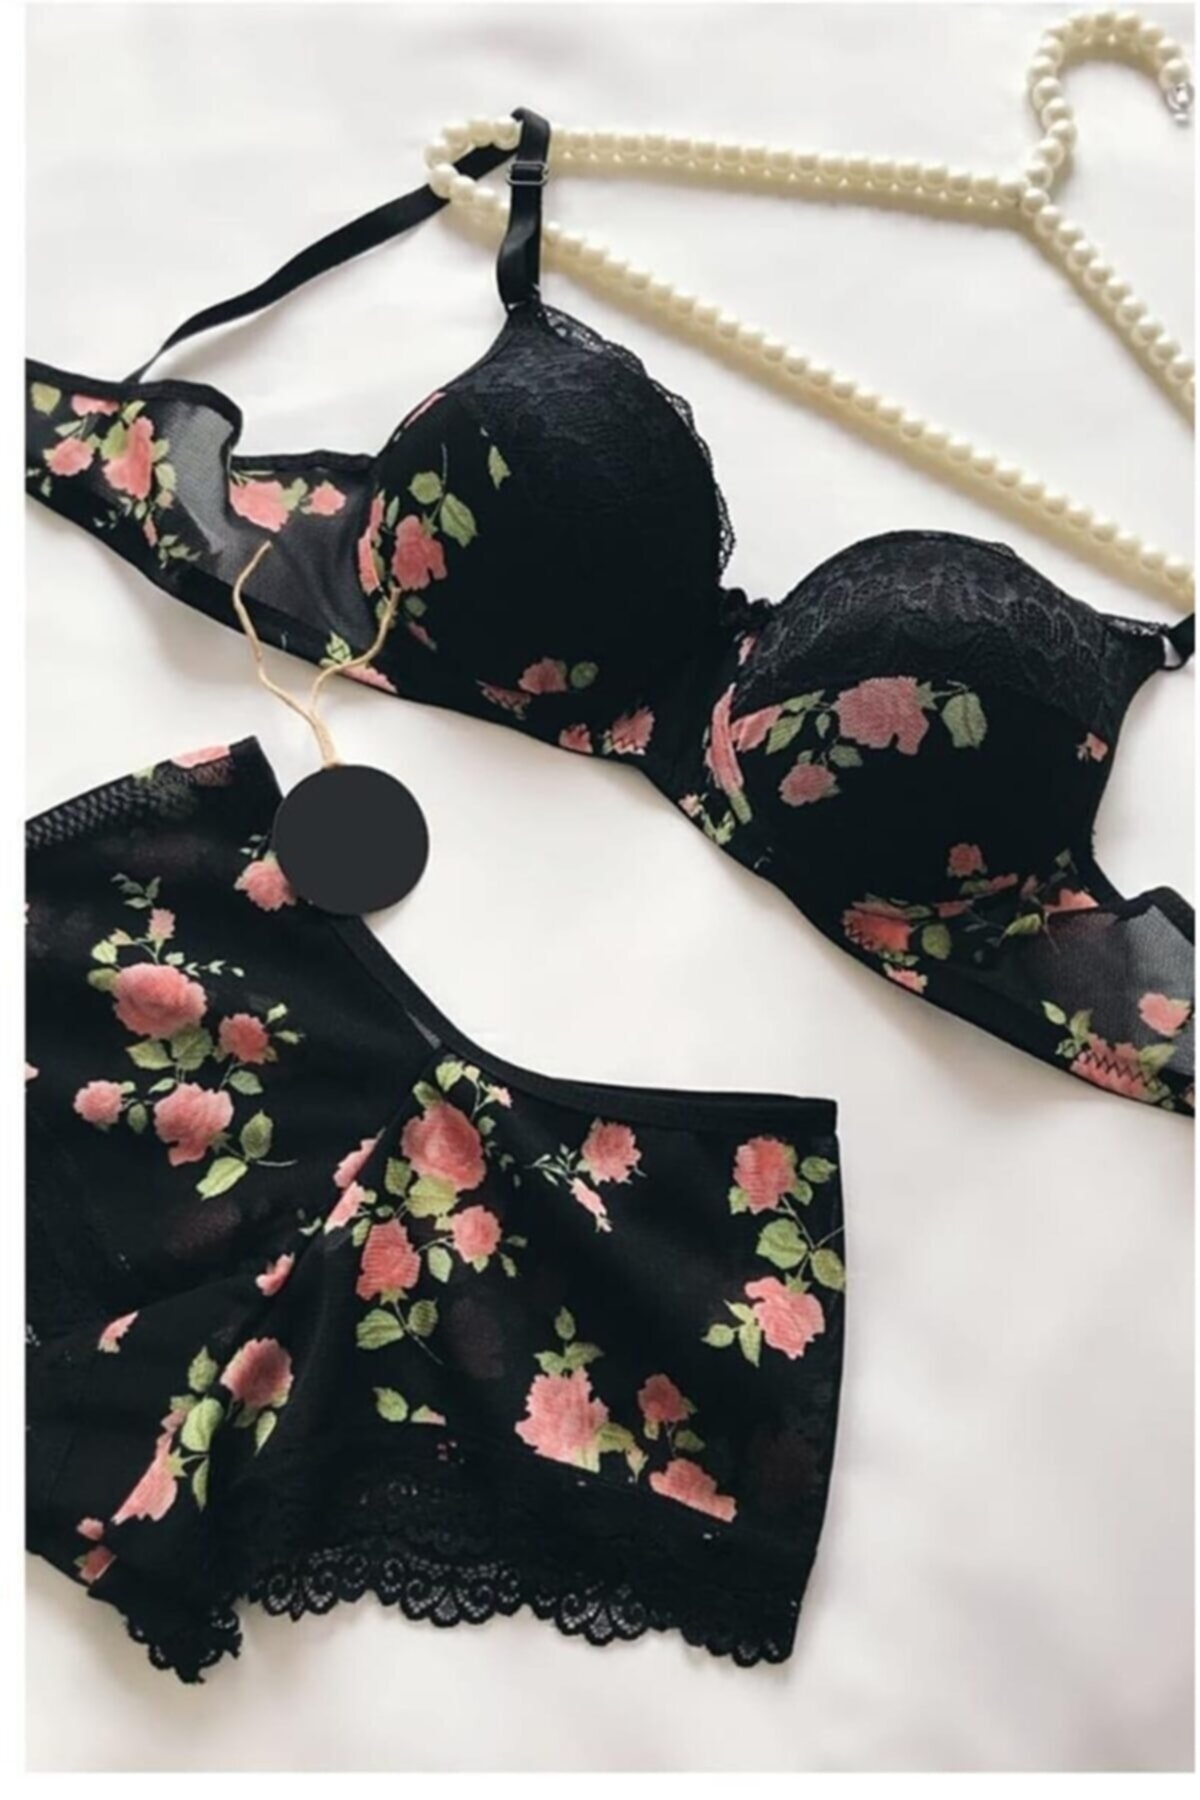 NurPeri İç Giyim Kadın Dolgulu Destekli Pembe Çiçek Desenli Siyah Boxer Tip Iç Çamaşır Takımı